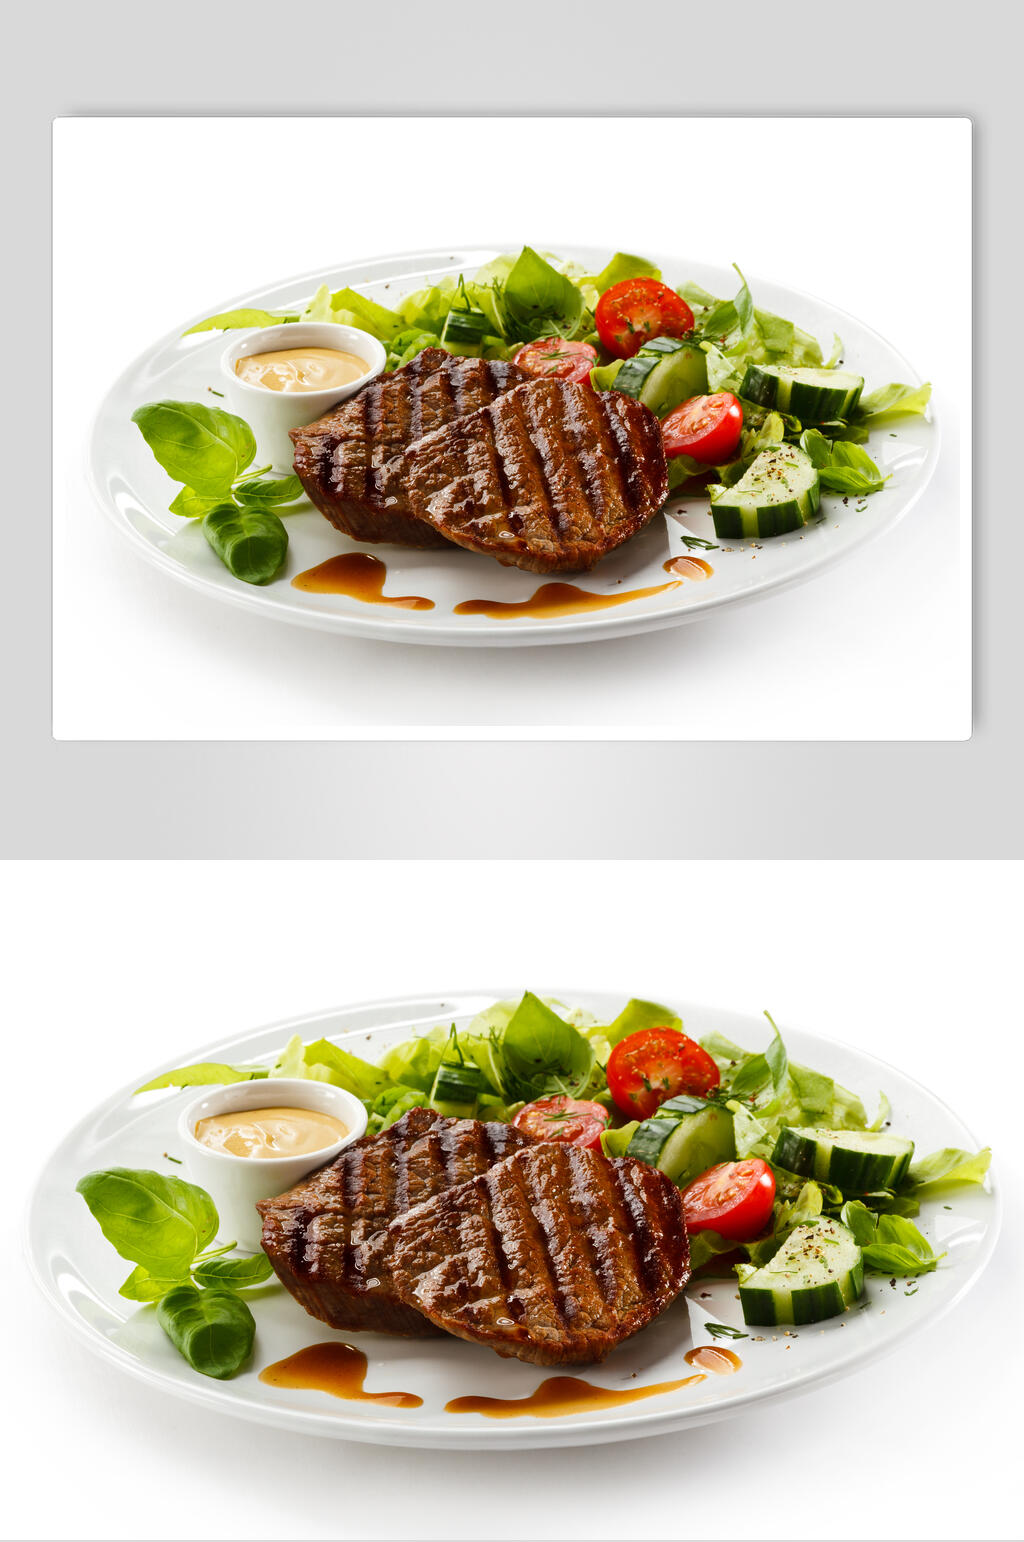 健康美味沙拉牛排猪排羊排食品图片模板下载